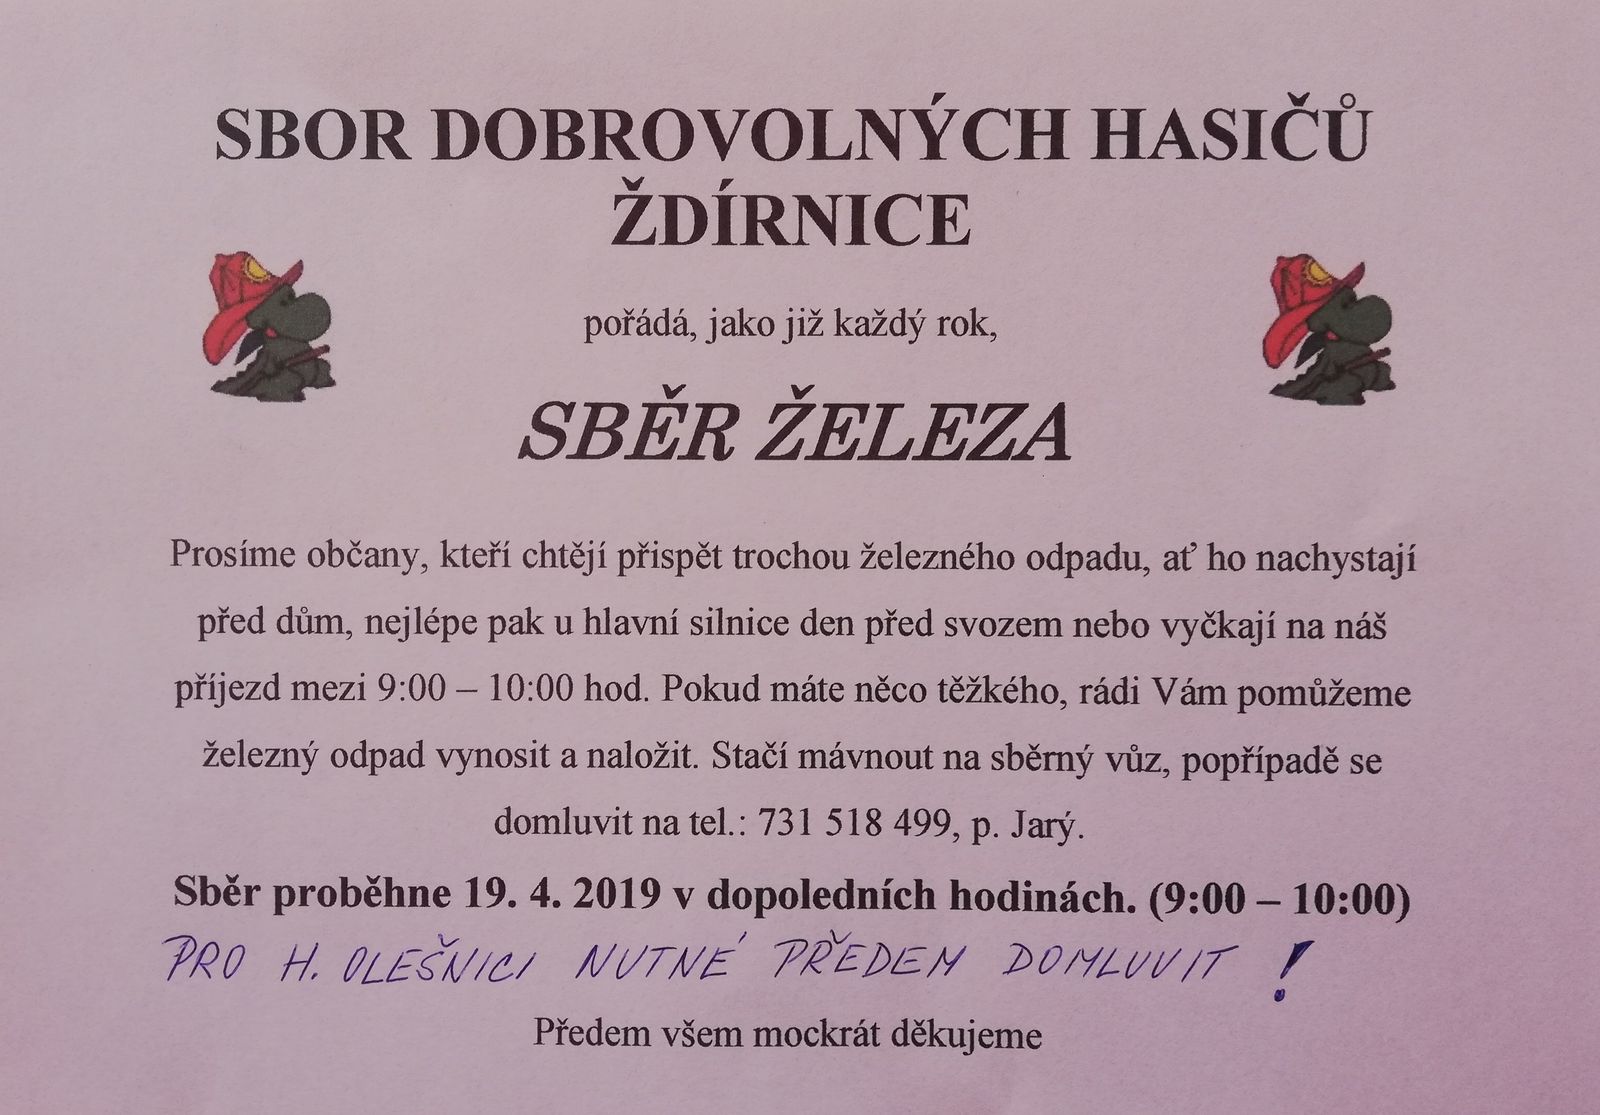 SDH Ždírnice pořádá "Sběr železa" dne 19.04.2019